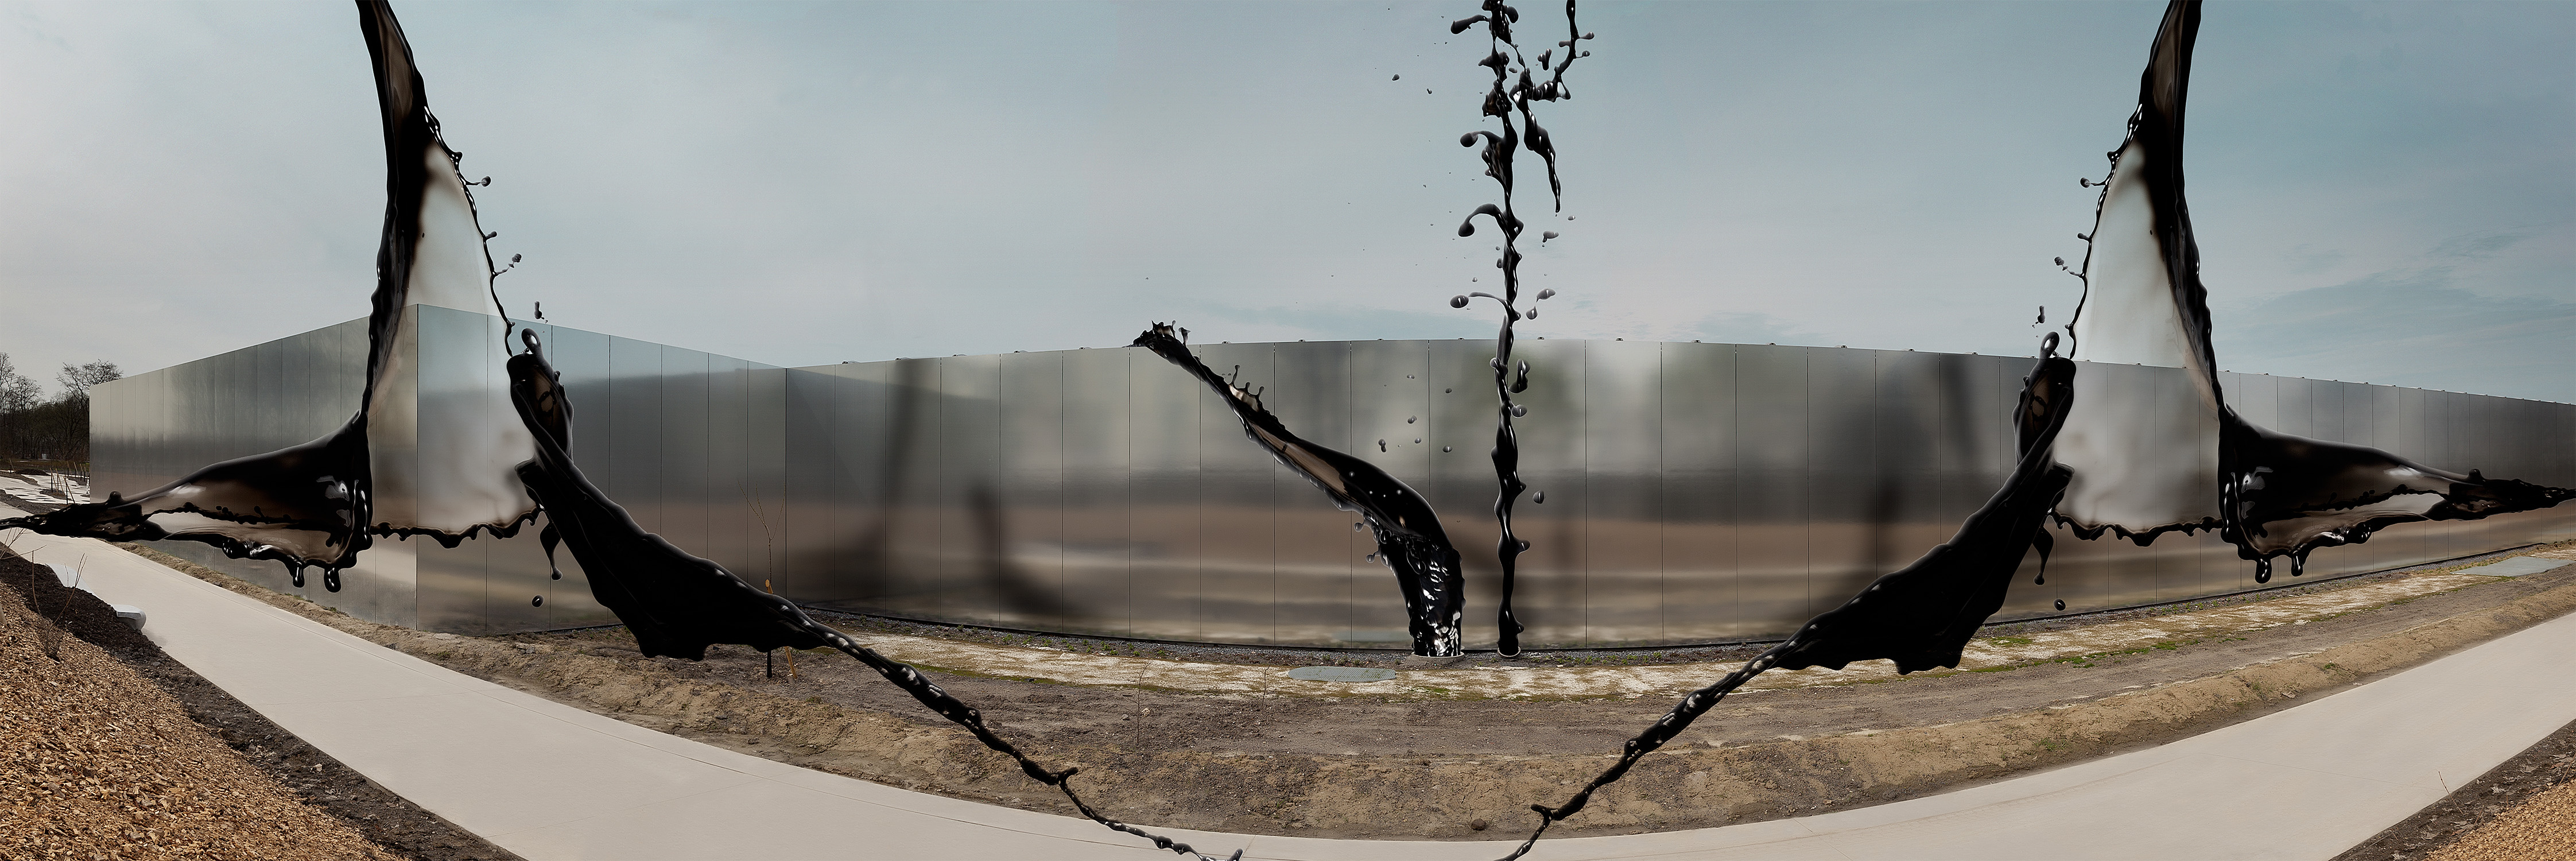 il grido s’infrange contro le mura / percorre labirinti sotterranei di città dolenti / e memorabili abbracci di petrolio nei deserti-50cm x 150cm – PRINT ON FINEART BARYTA HAHNEMÜHLE / DIBOND-©2013 – Edition of 5